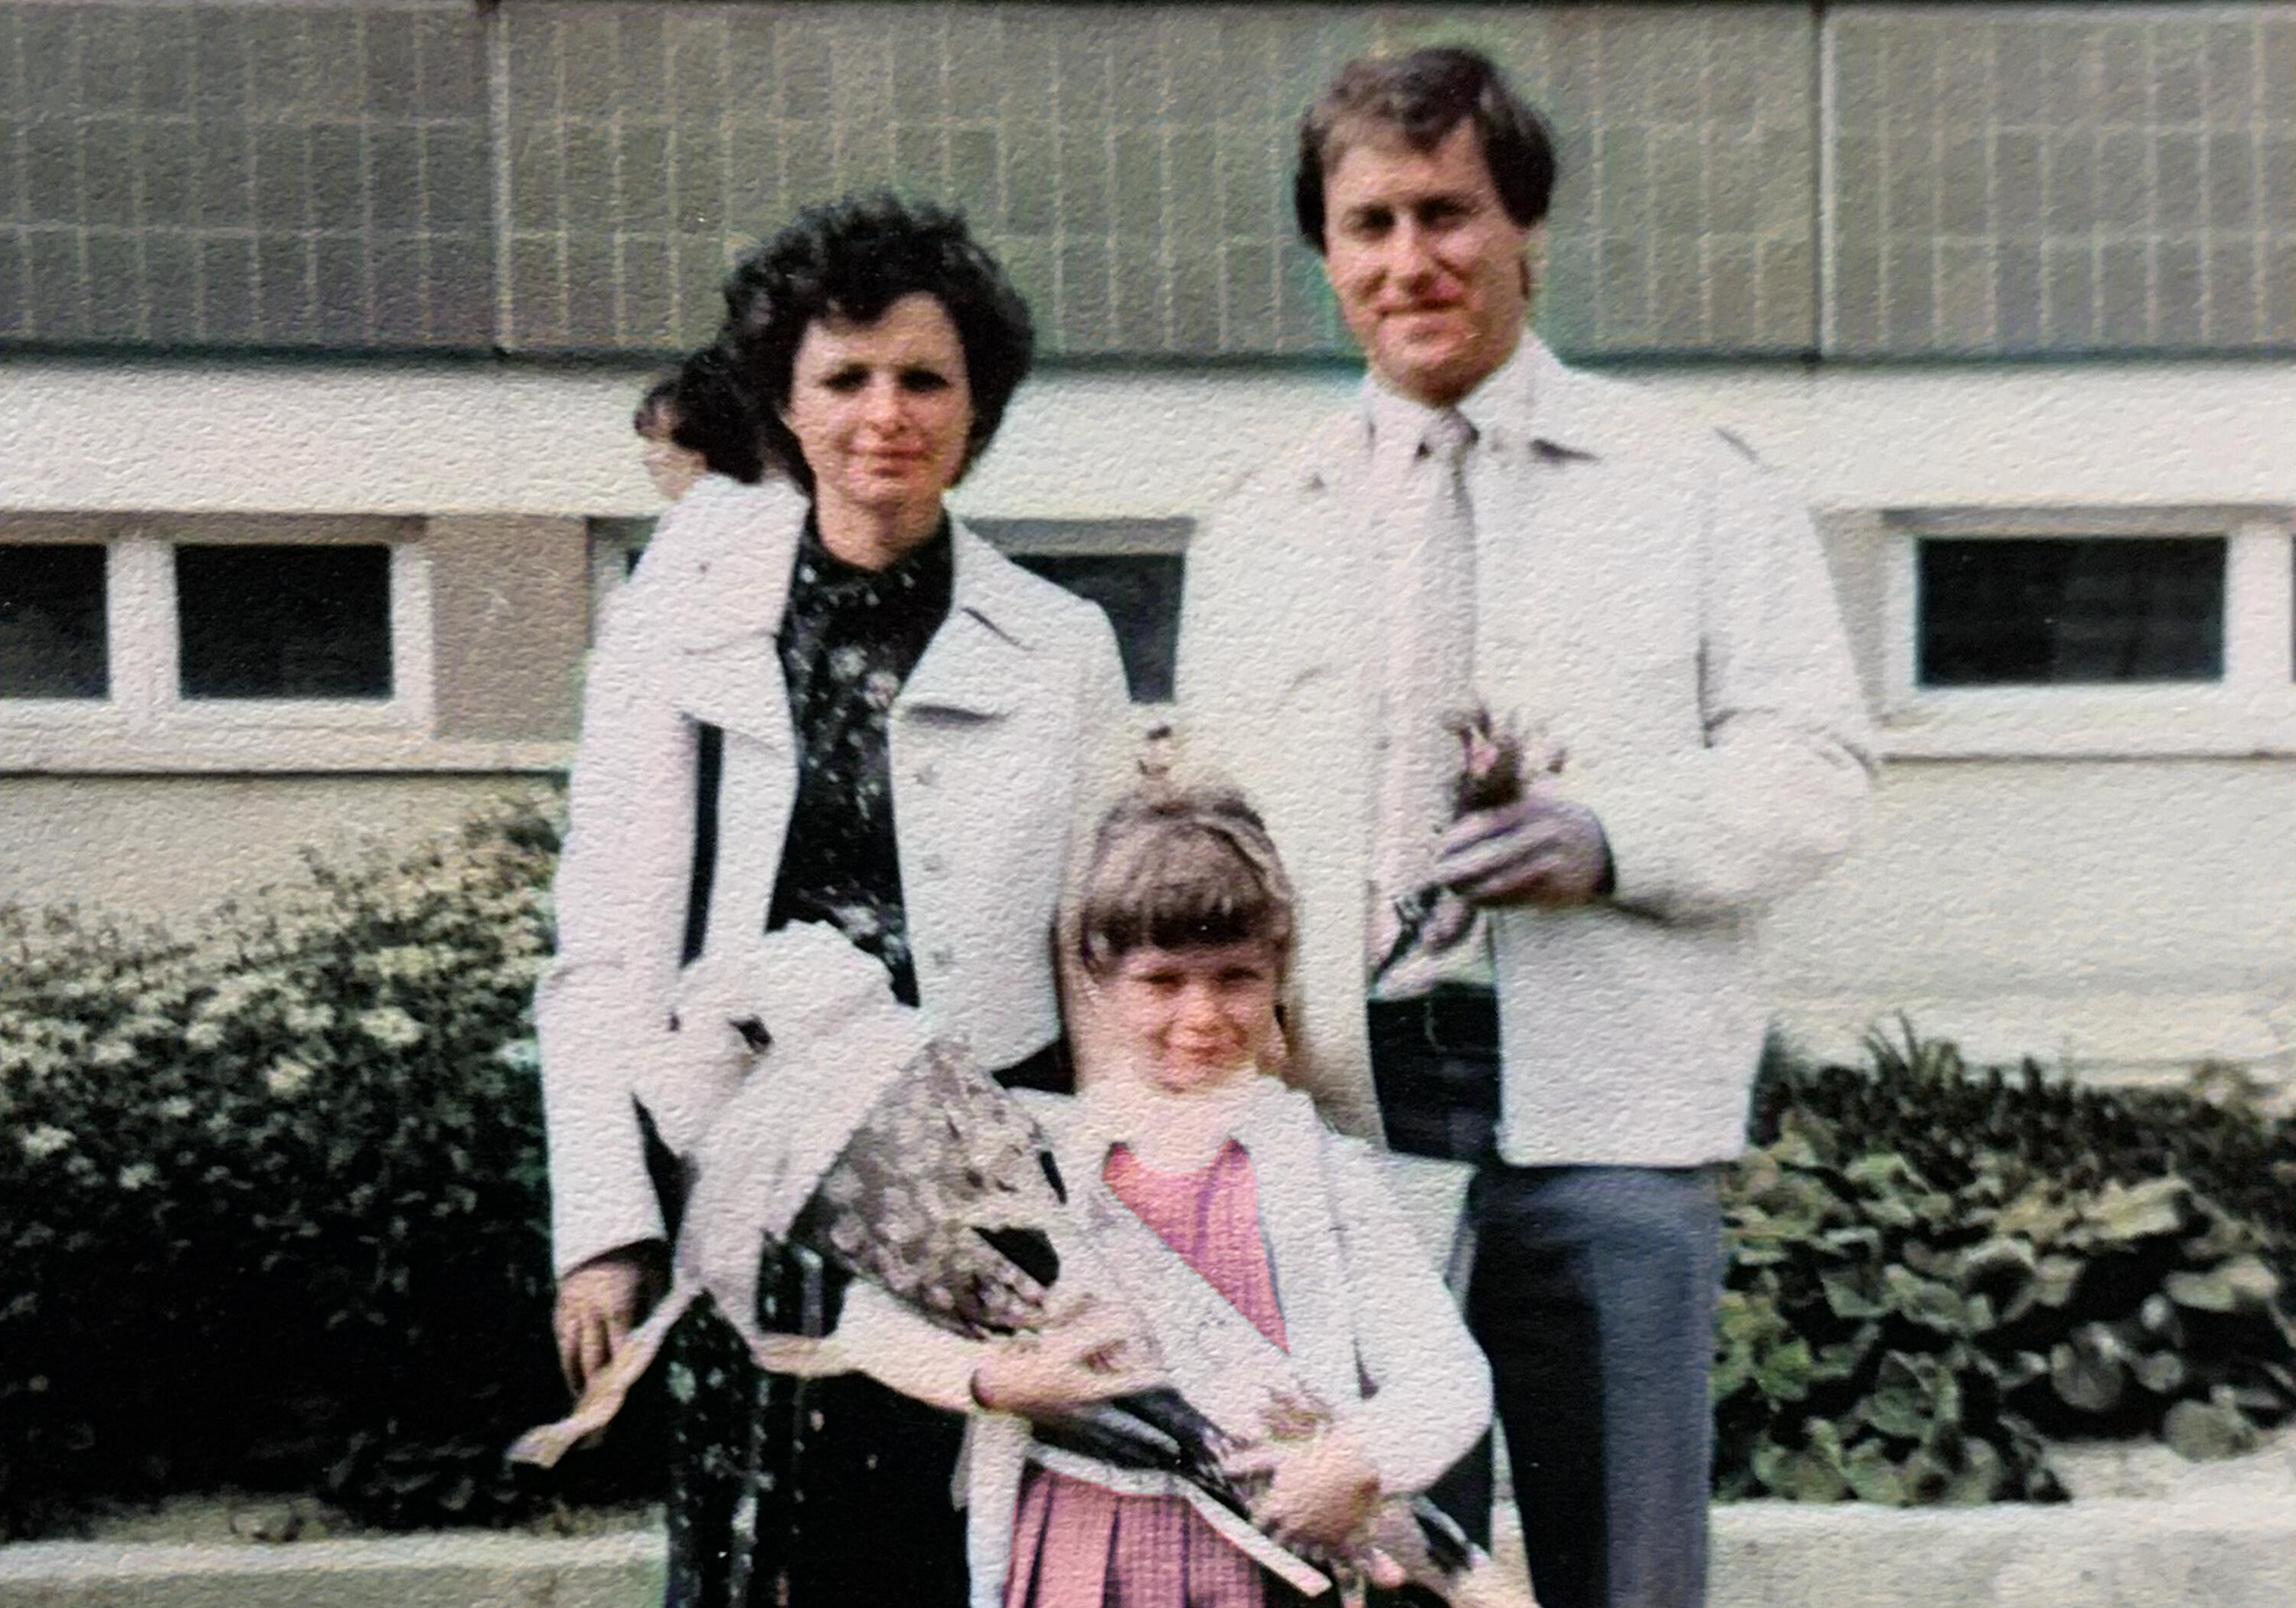 Die Autorin, Manuela Klitzsch, als Kind bei ihrem Schulanfang im Jahr 1982 gemeinsam mit ihren Eltern.